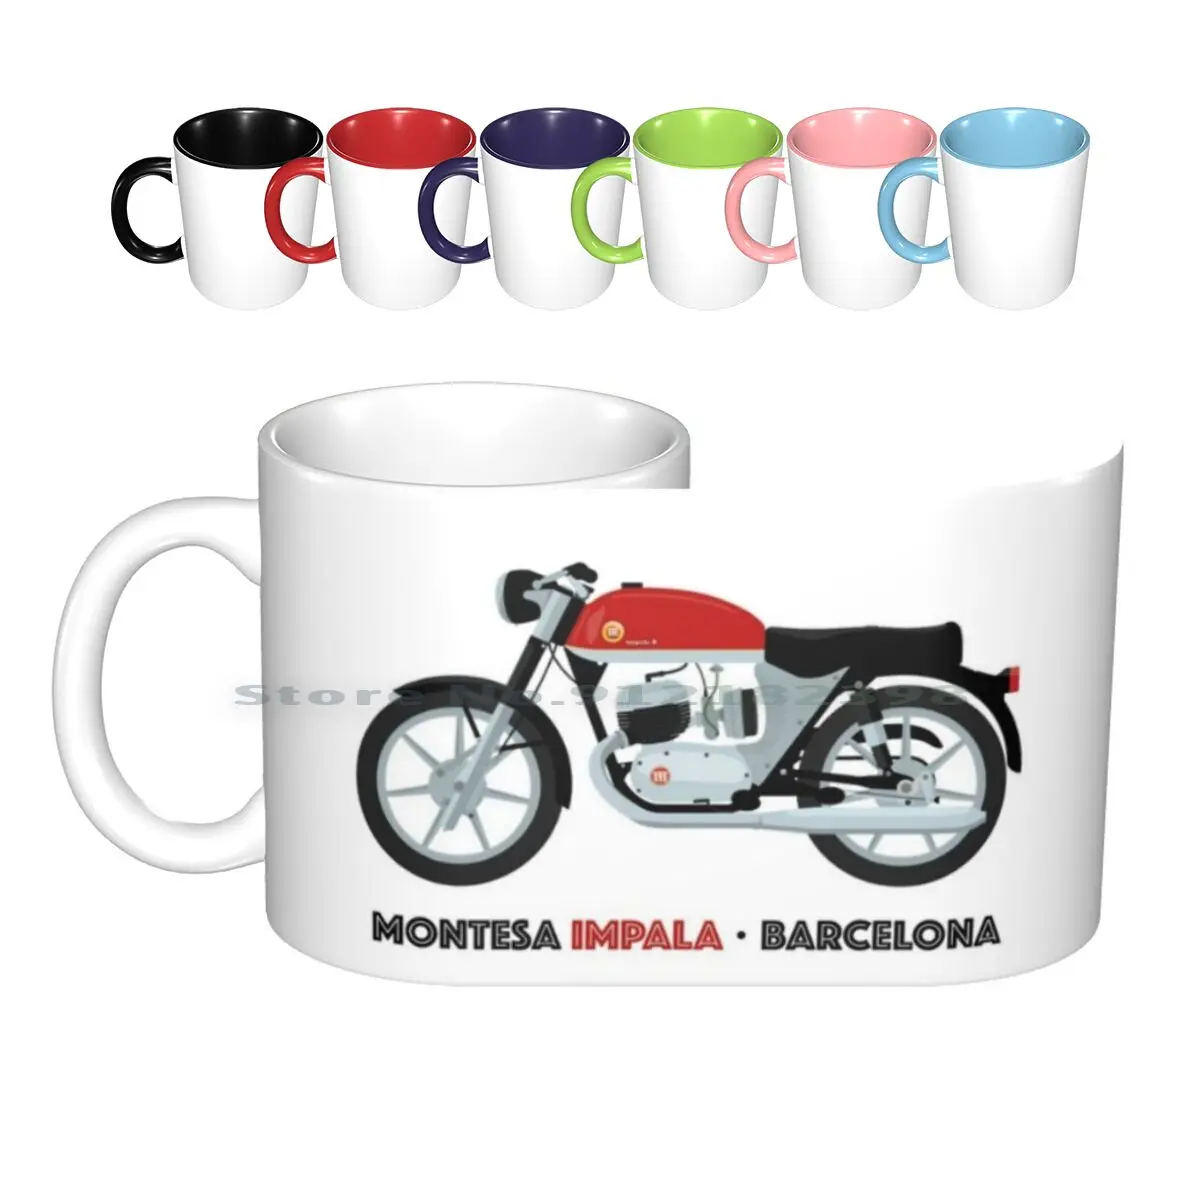 

Керамические кружки монтесса Импала 2 дюйма, кофейные чашки, кружка для молока и чая, Классическая винтажная кружка монтесса Импала для мотоцикла, креативный тренд